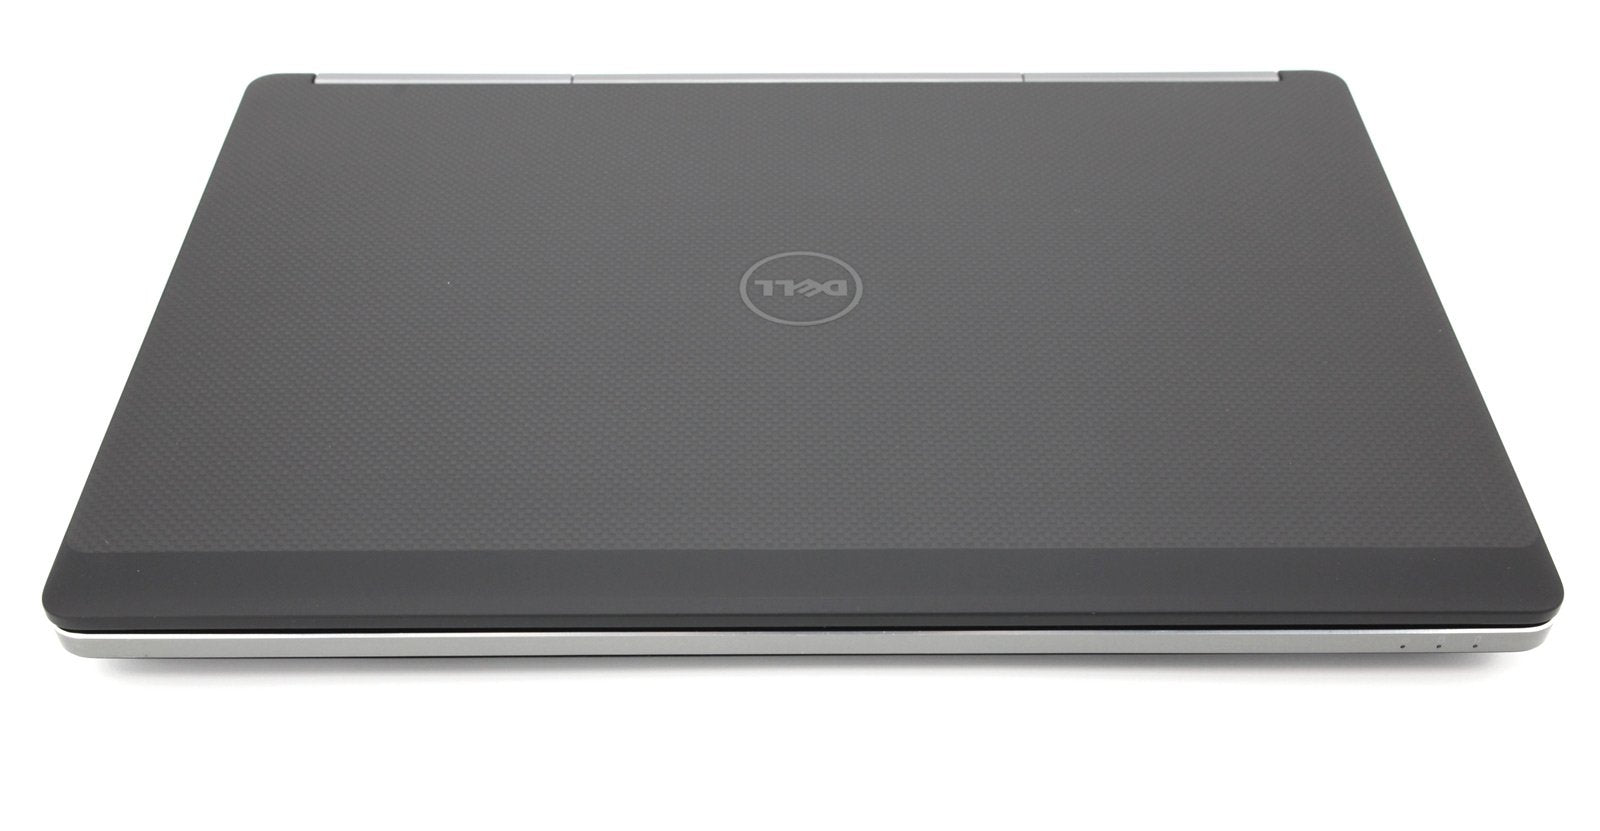 Dell Precision 7720 17.3" Laptop: Core i7-7820HQ, 32GB RAM, 1TB SSD, Warranty - CruiseTech